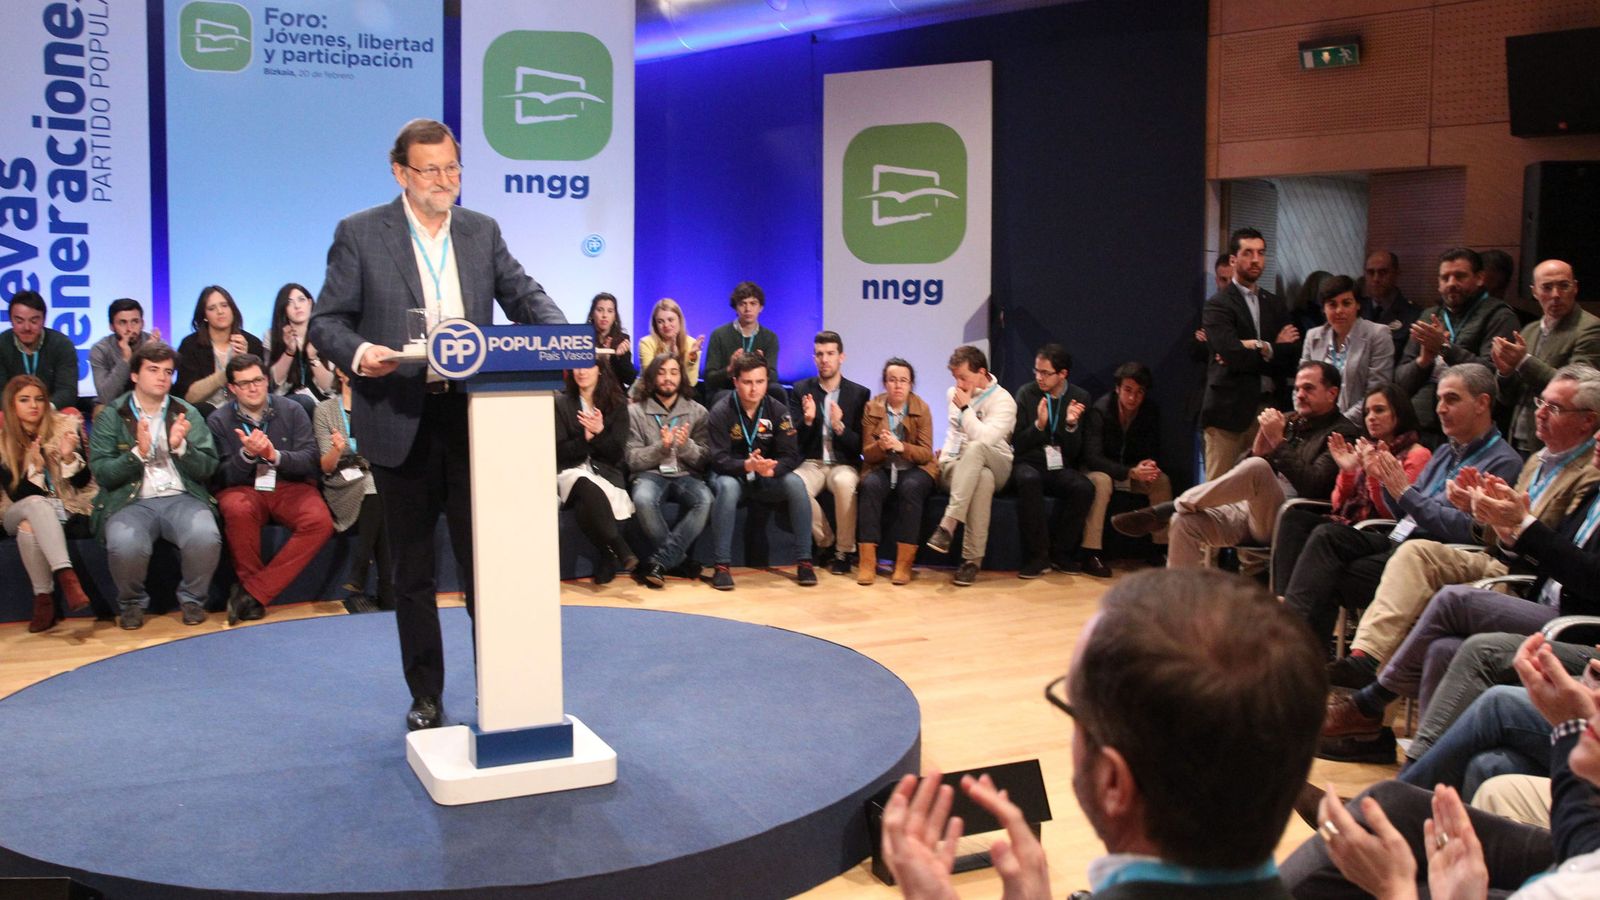 Foto: Rajoy en foro nuevas generaciones del paÍs vasco